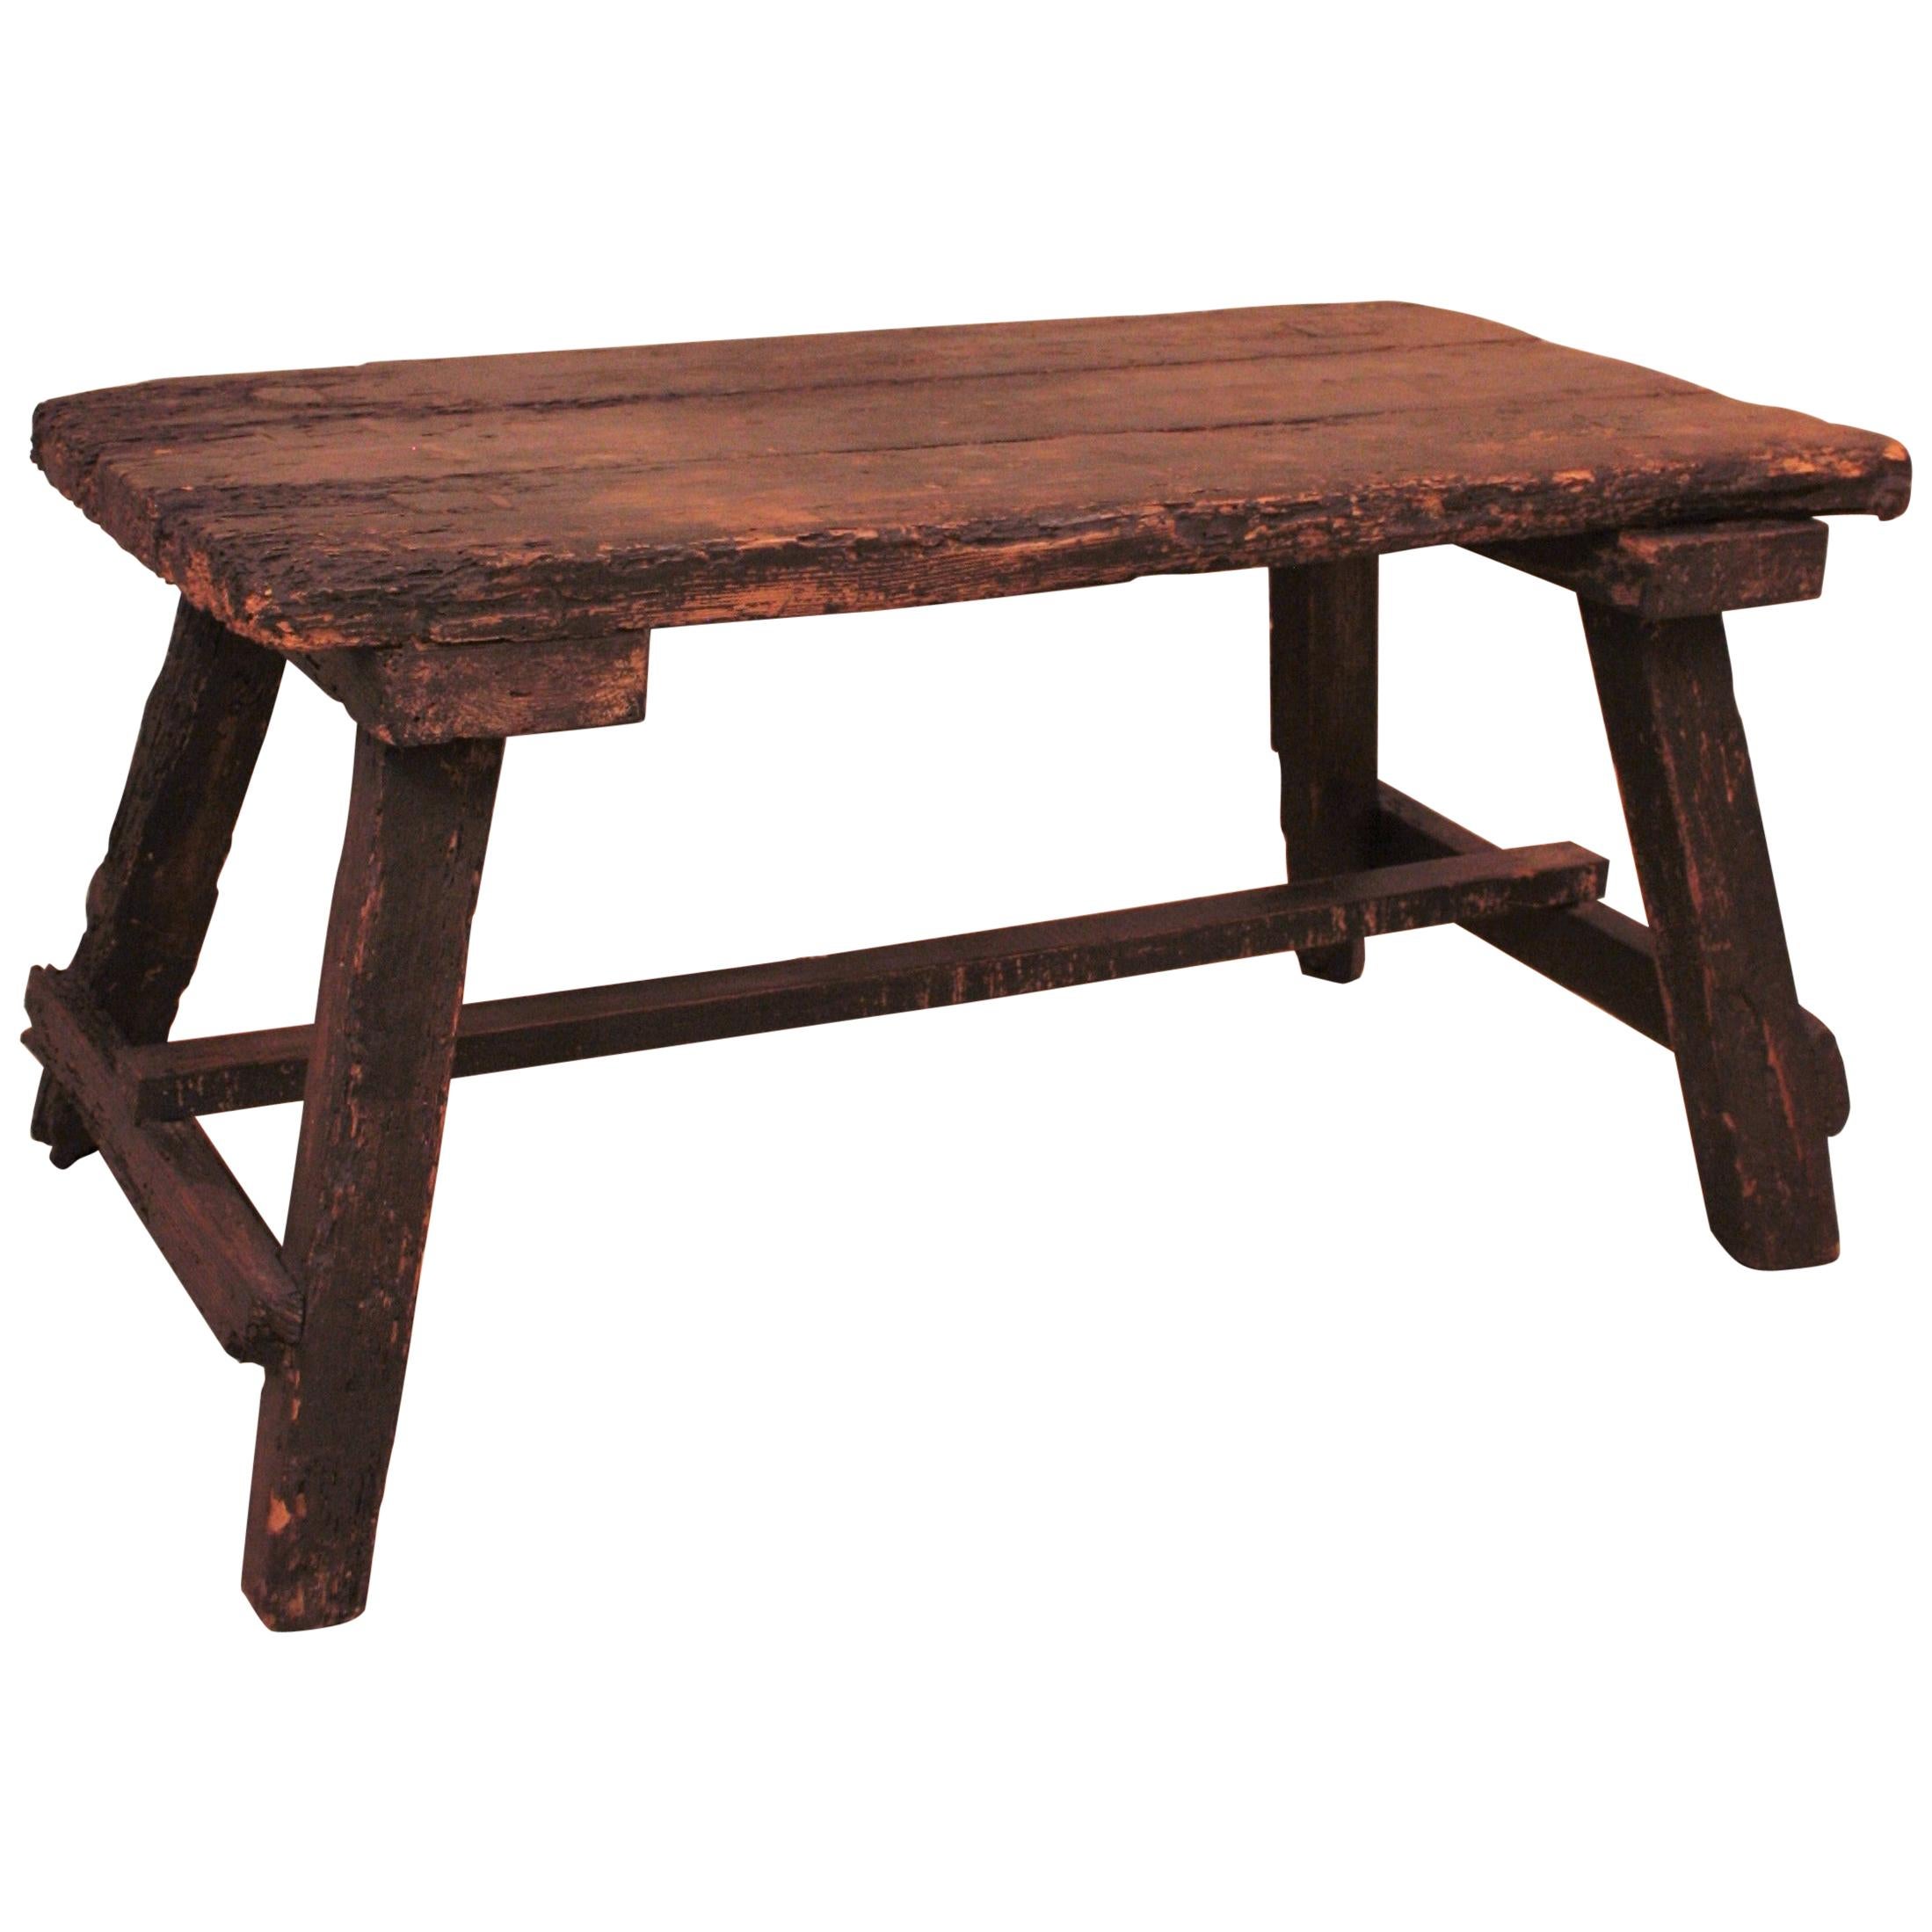 Magnifique table basse en bois de pin espagnol primitif.
Cette table est d'une élégance rustique ; elle présente de belles marques d'usure et de caractère et tout le goût des anciens meubles espagnols. Elle peut être utilisée comme table d'appoint,